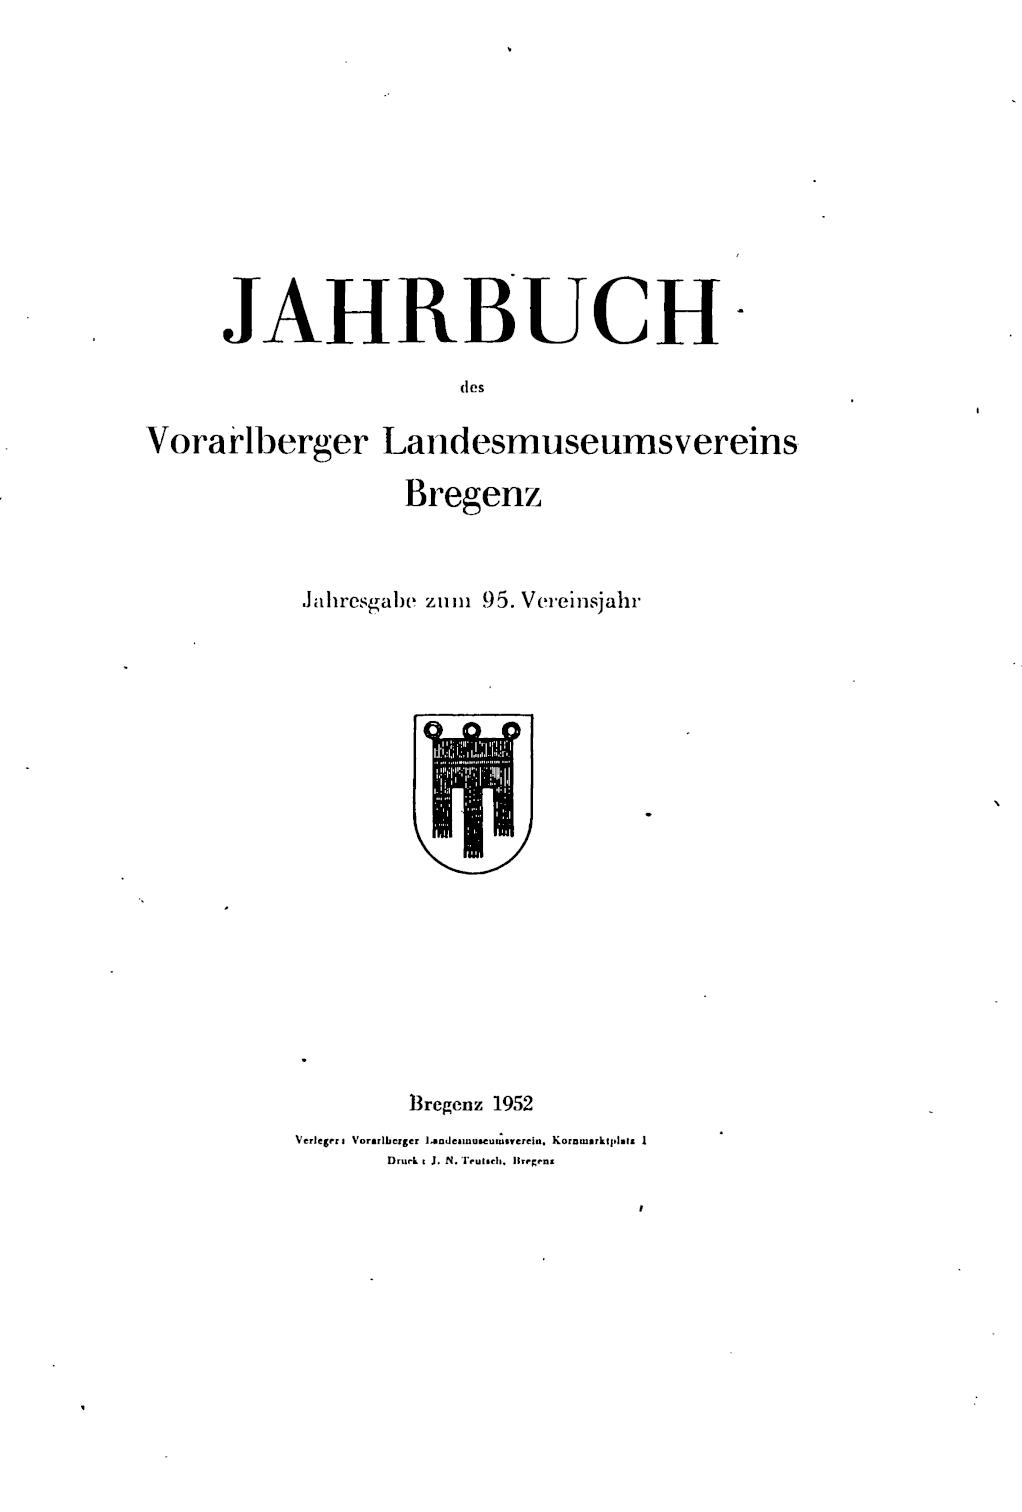 Jahrbuch des Vorarlberger Landesmuseumsvereins, 1952, Jahrestitelblatt, ANNO/ÖNB